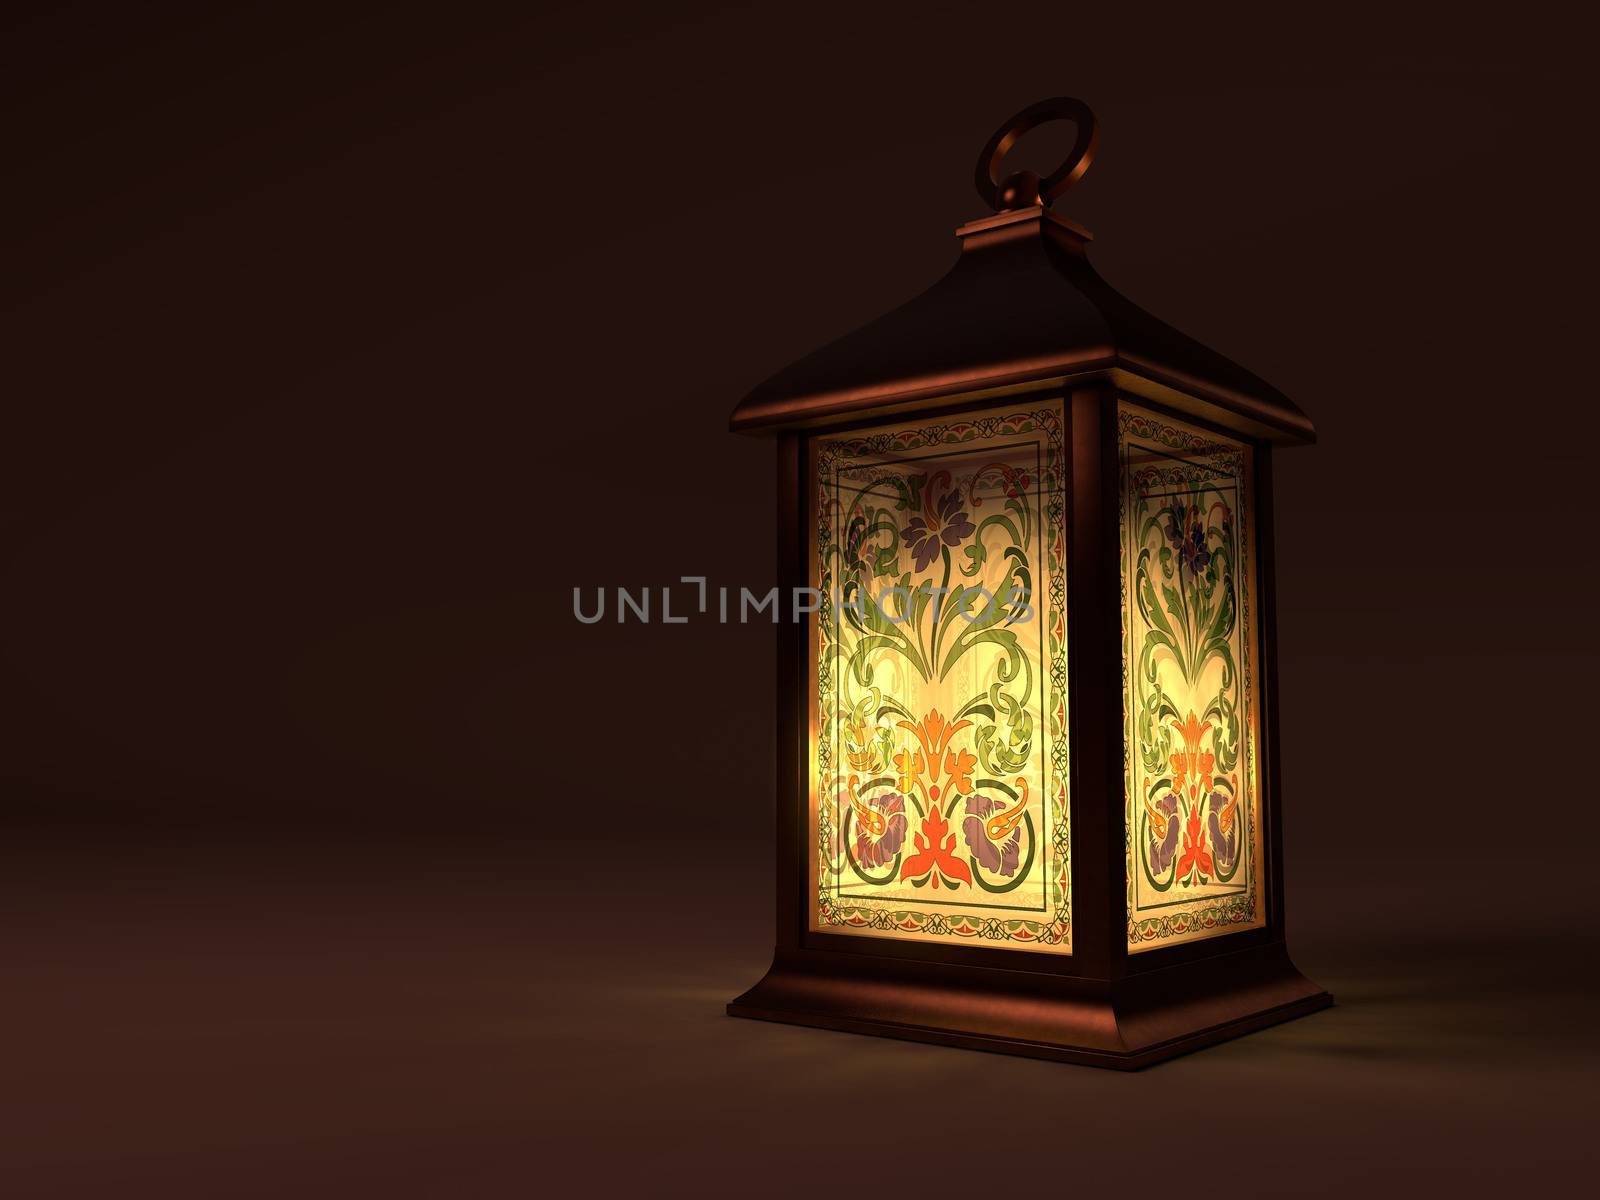 Vintage copper lantern on dark background